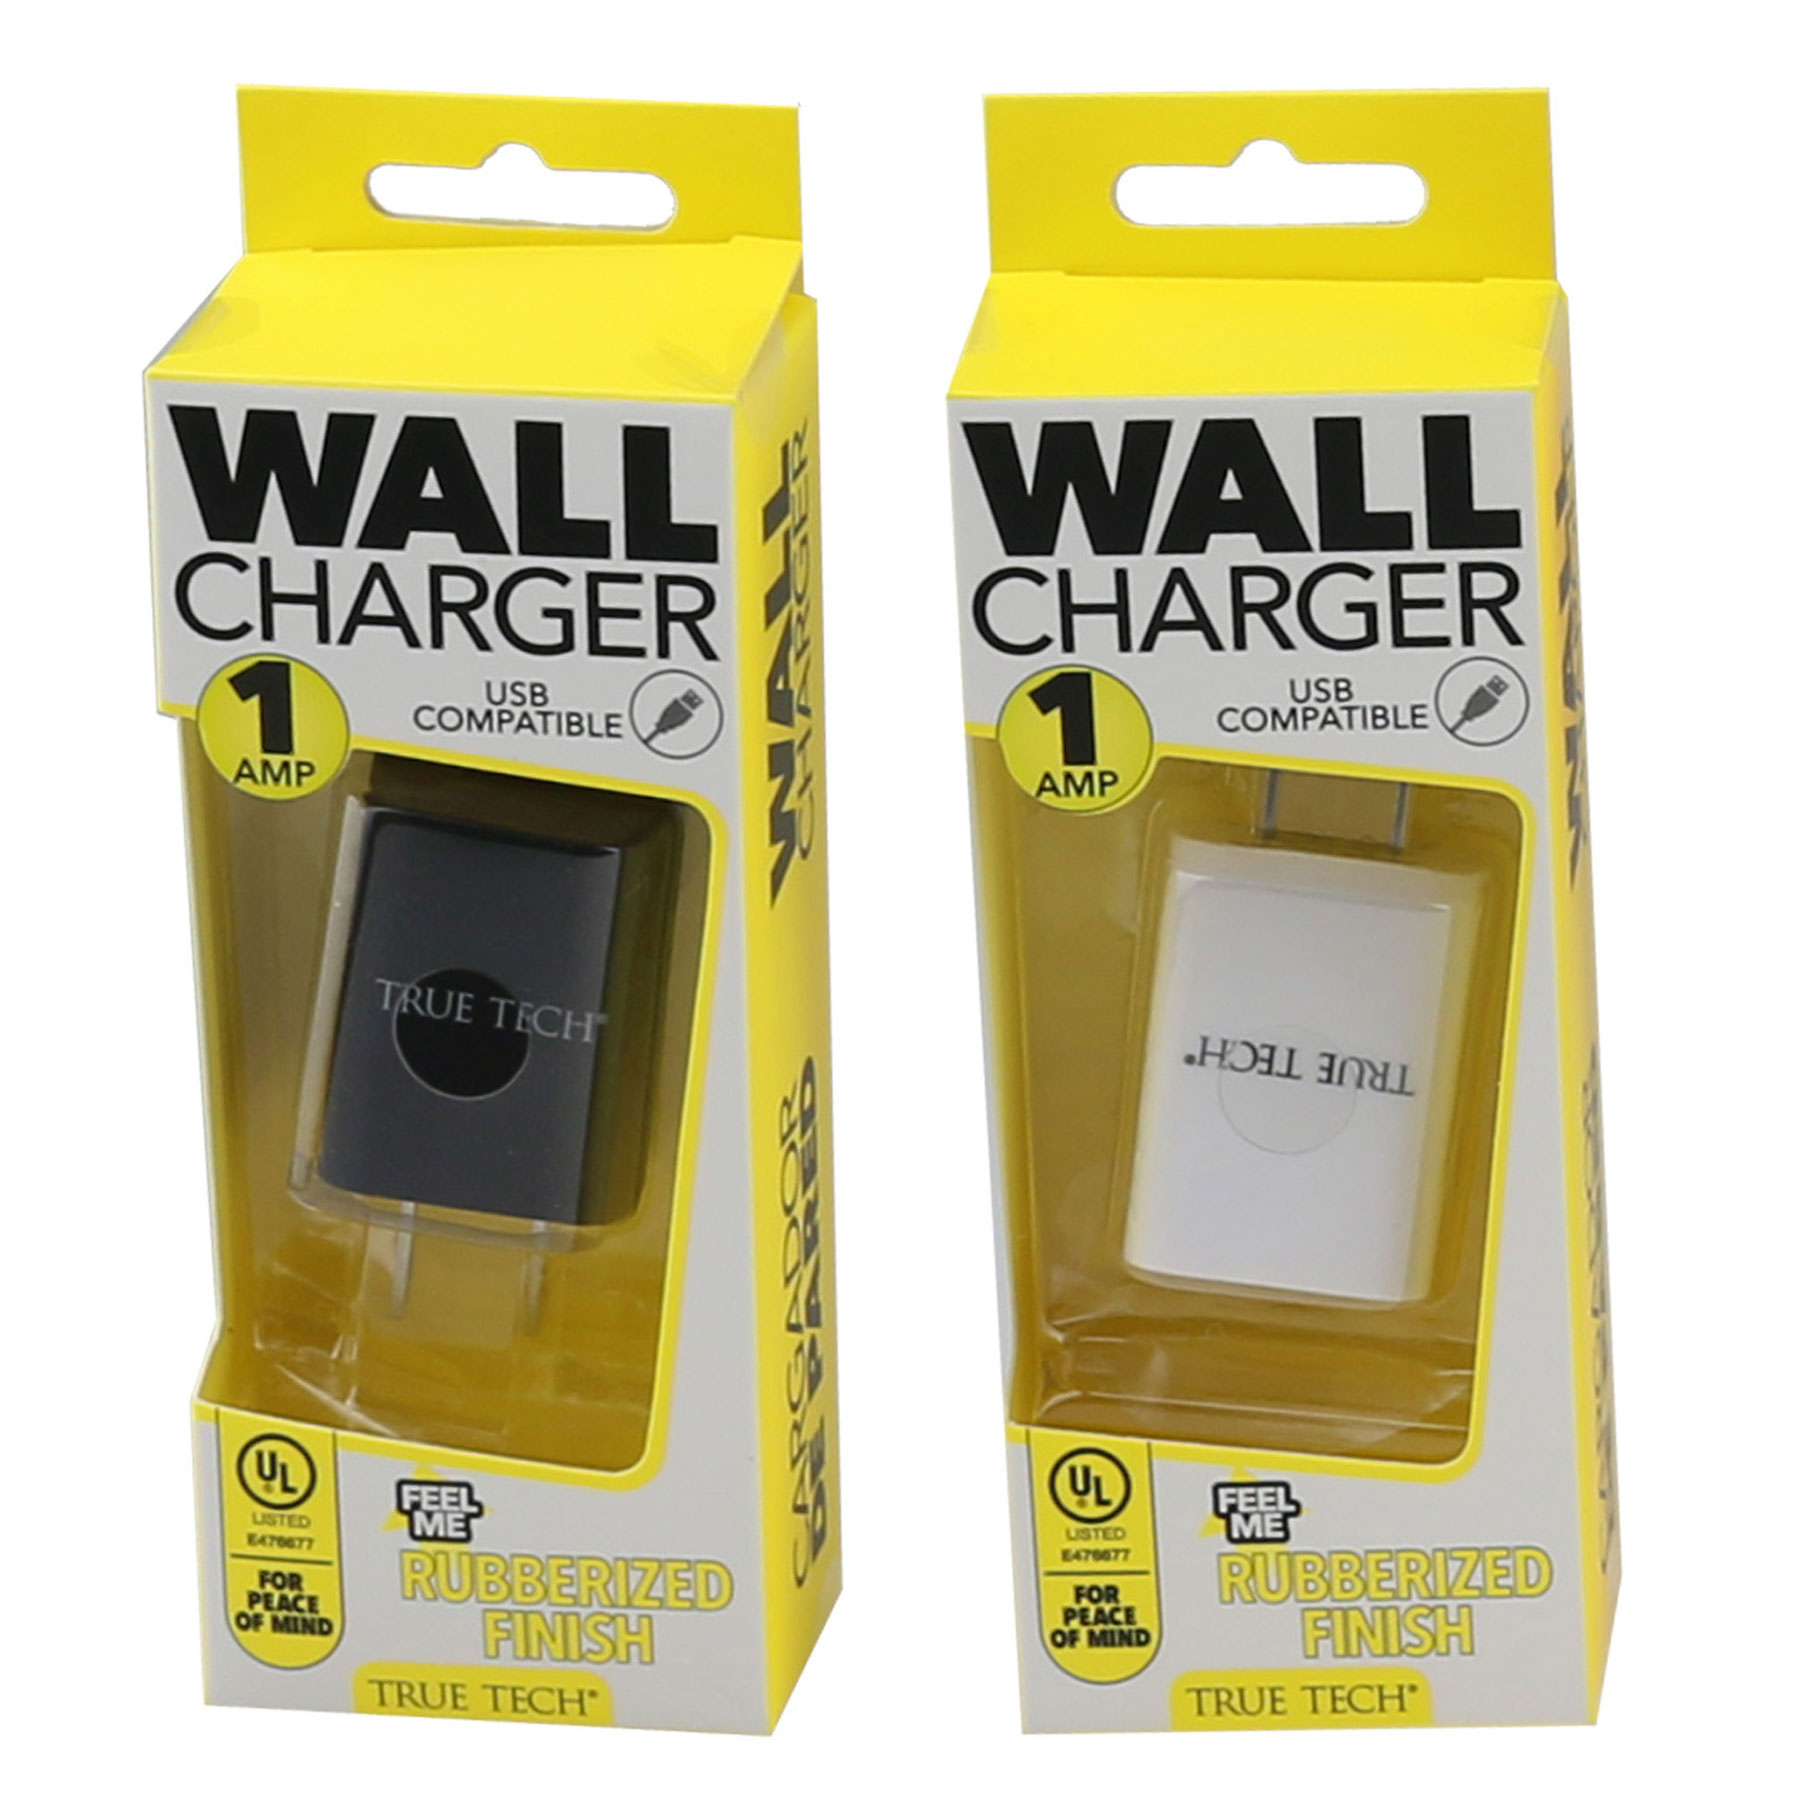 WALL CHARGER DUAL USB 2.4 AMP VIVITAR